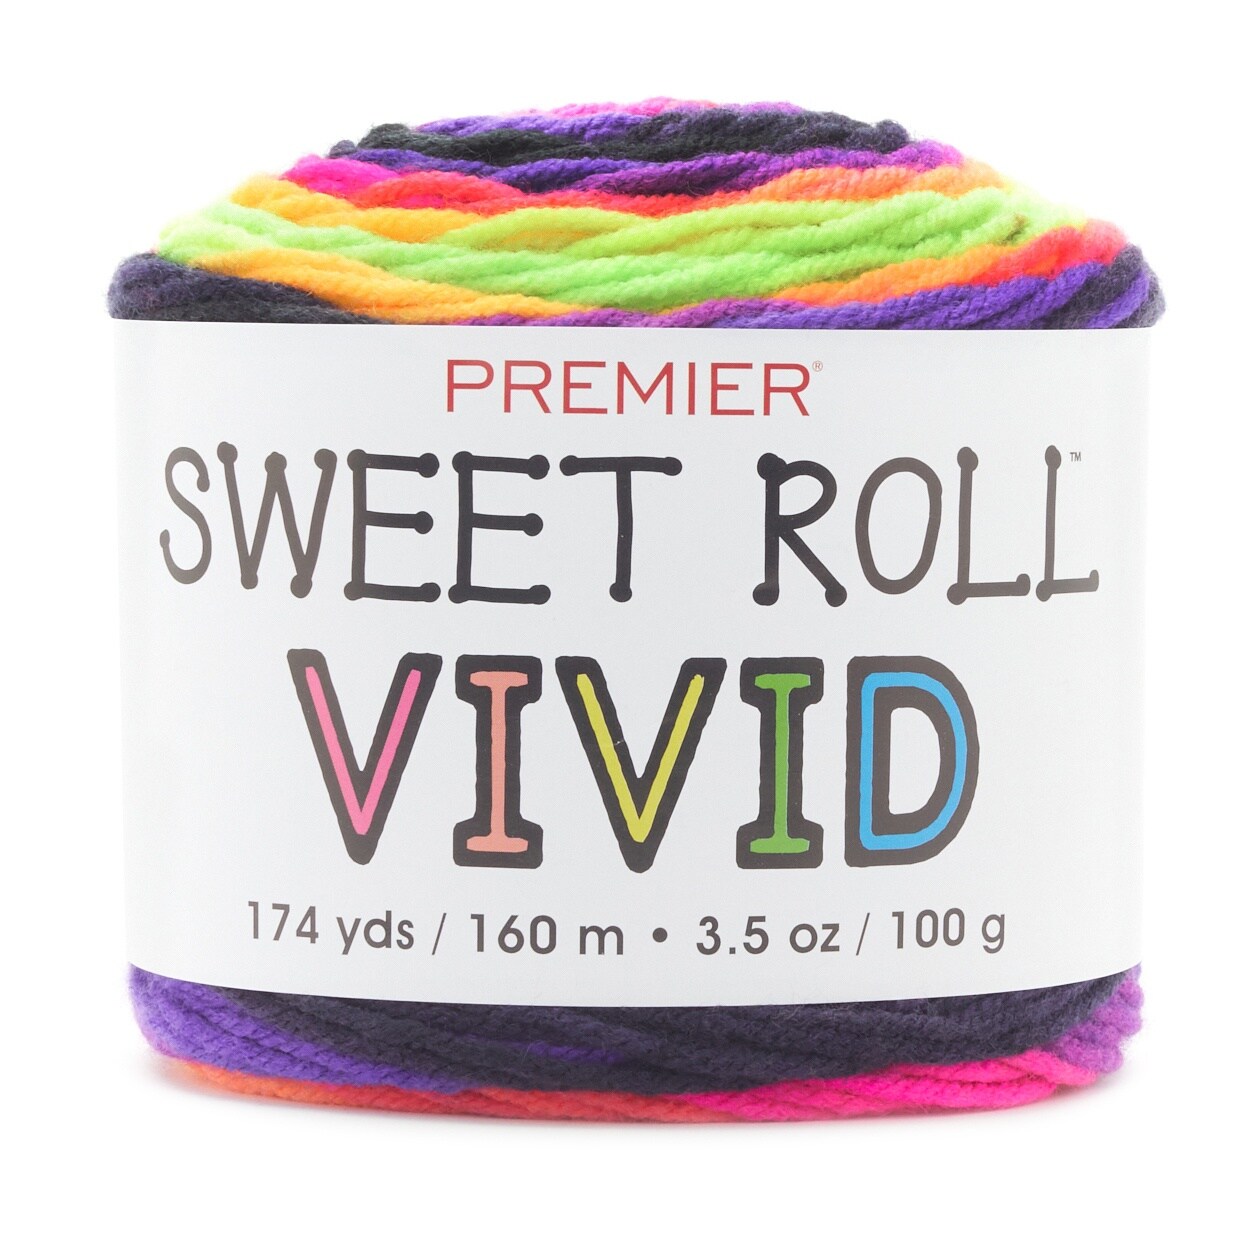 Premier Sweet Roll Vivid Yarn-Glow Worm